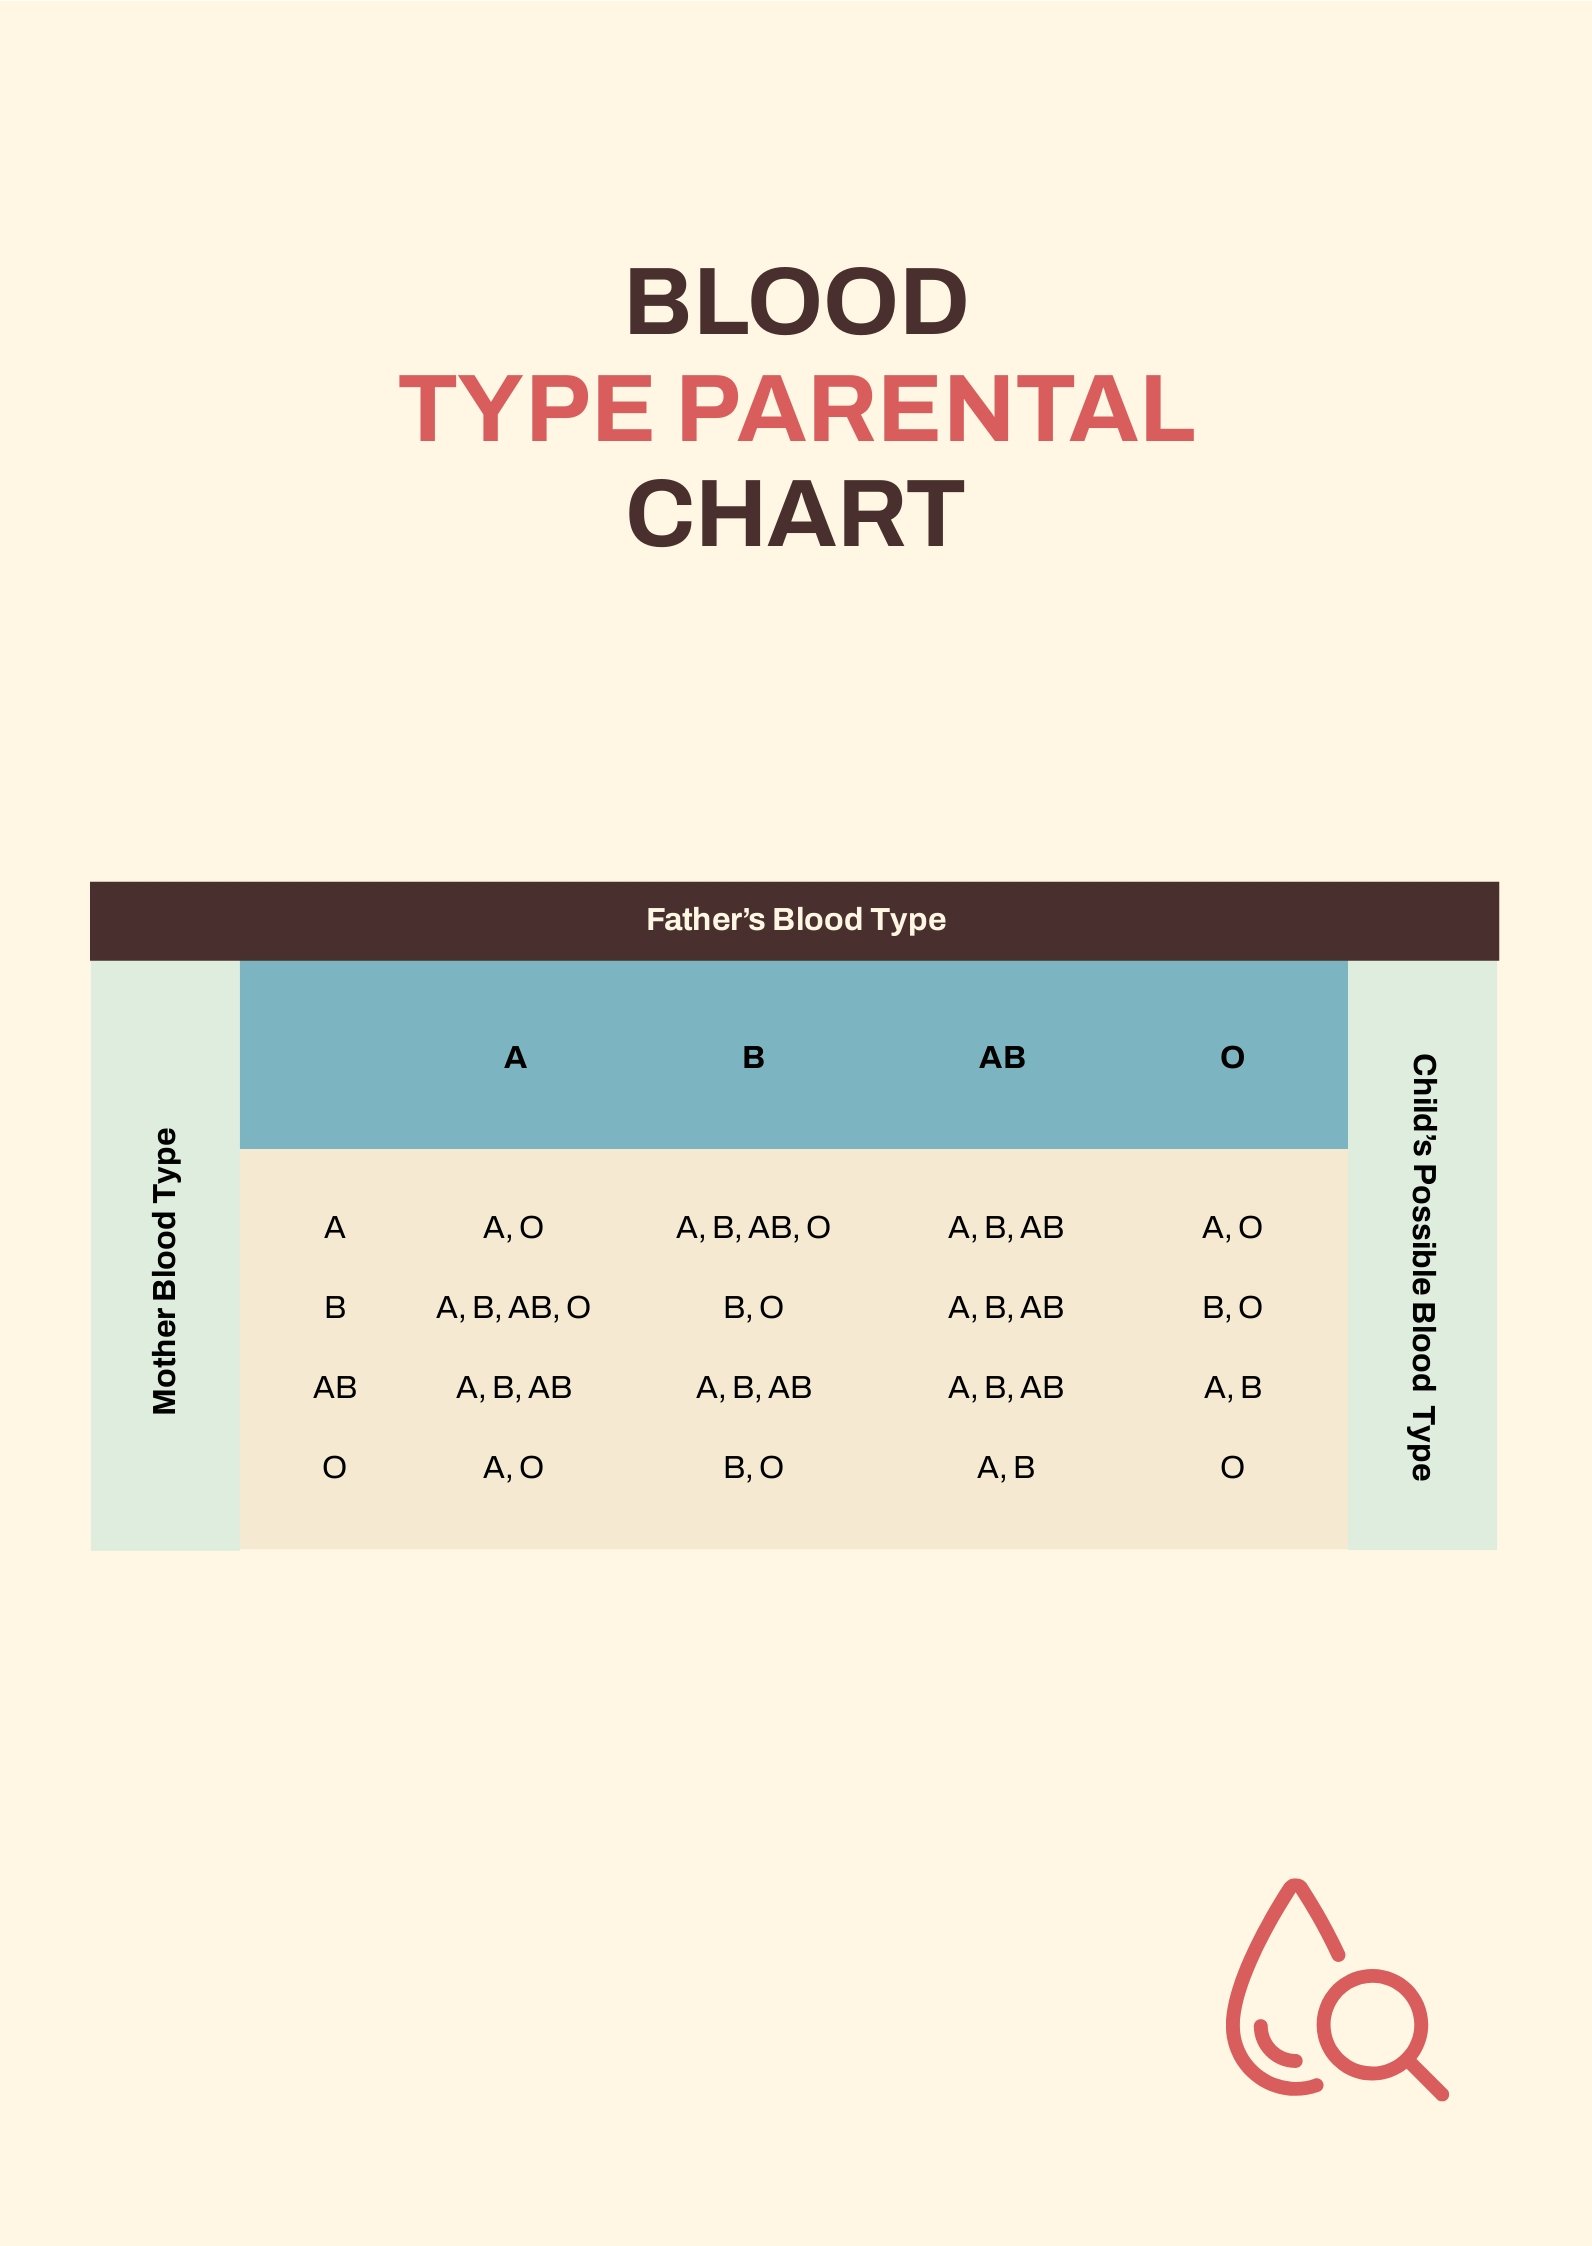 Free Blood Type Parental Chart